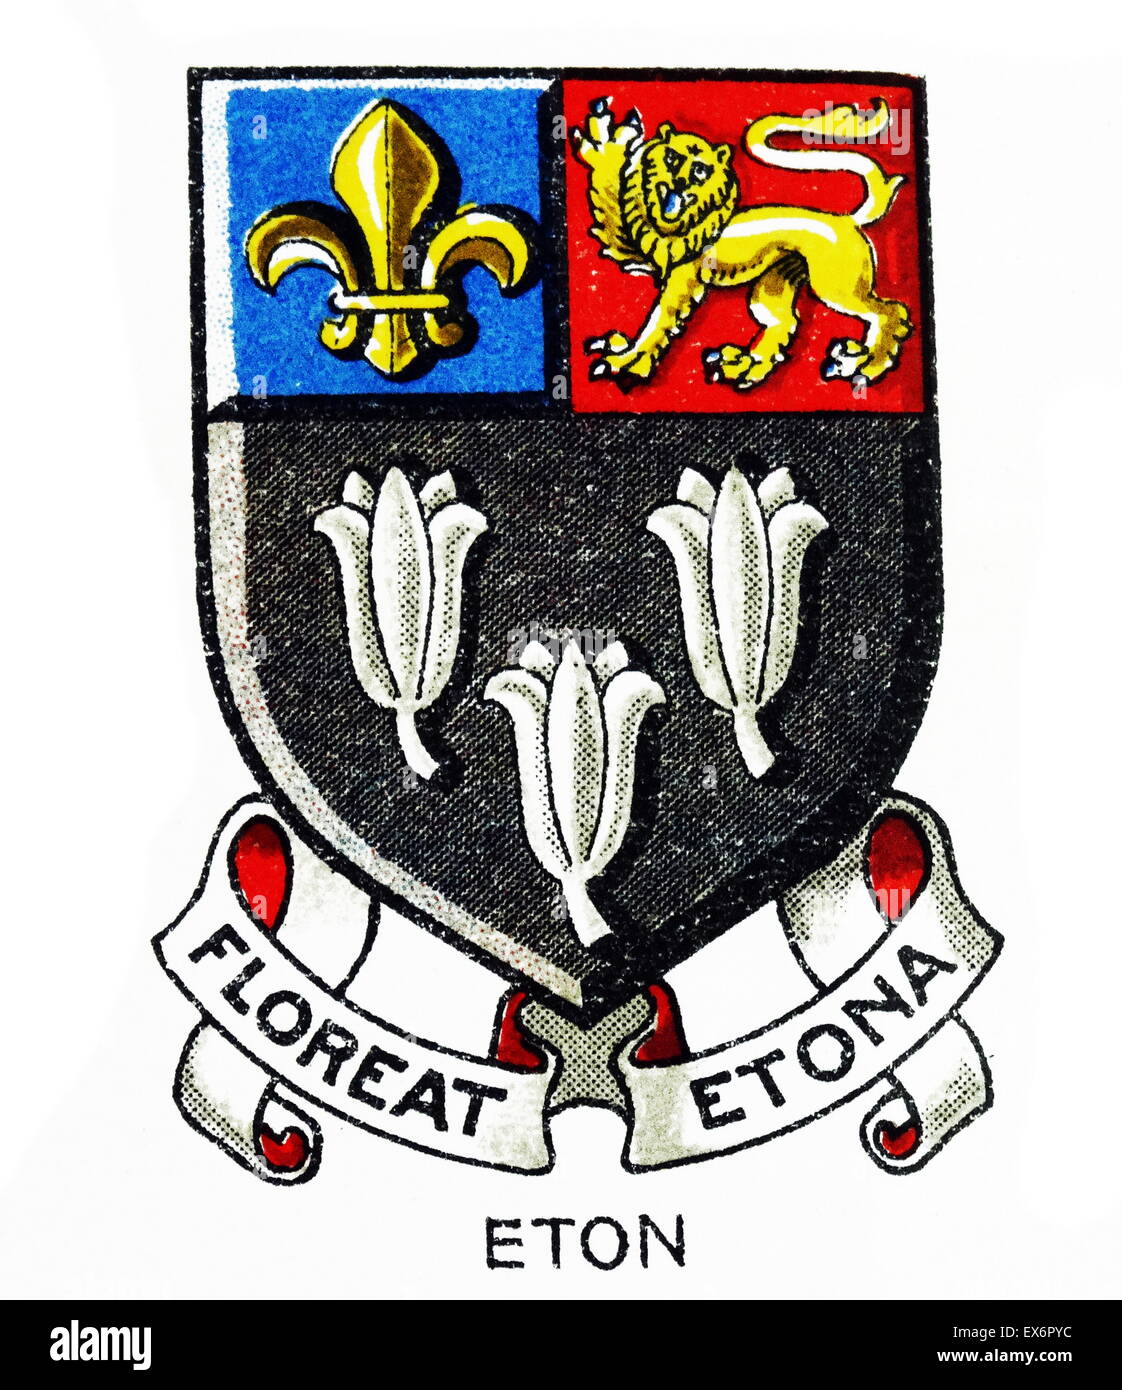 Emblema de la universidad de Eton, informalmente, a menudo denominado simplemente Eton Inglés, un internado independiente situado en Eton, Berkshire, cerca de Windsor. La escuela fue fundada por Enrique VI de Inglaterra en 1440. Foto de stock